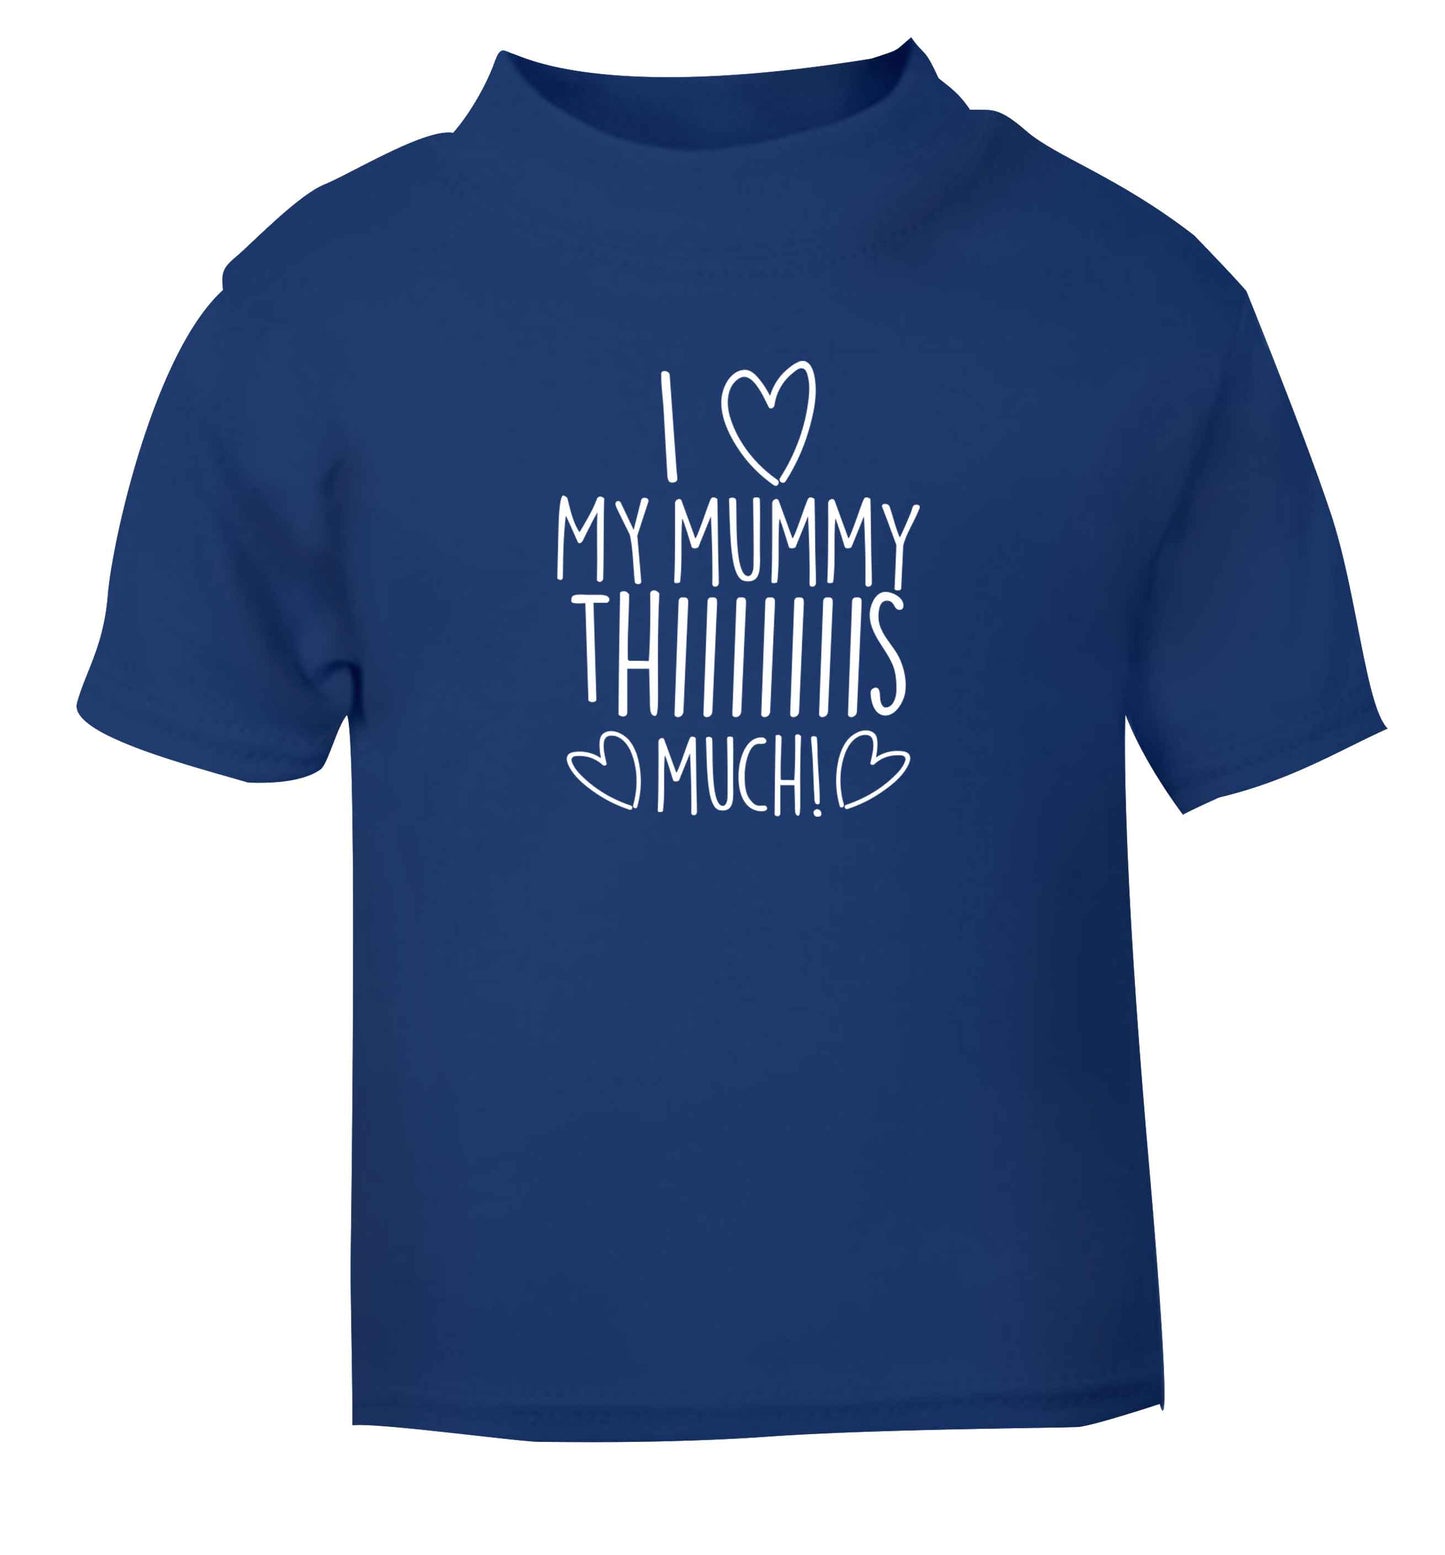 I love my mummy thiiiiis much! blue baby toddler Tshirt 2 Years